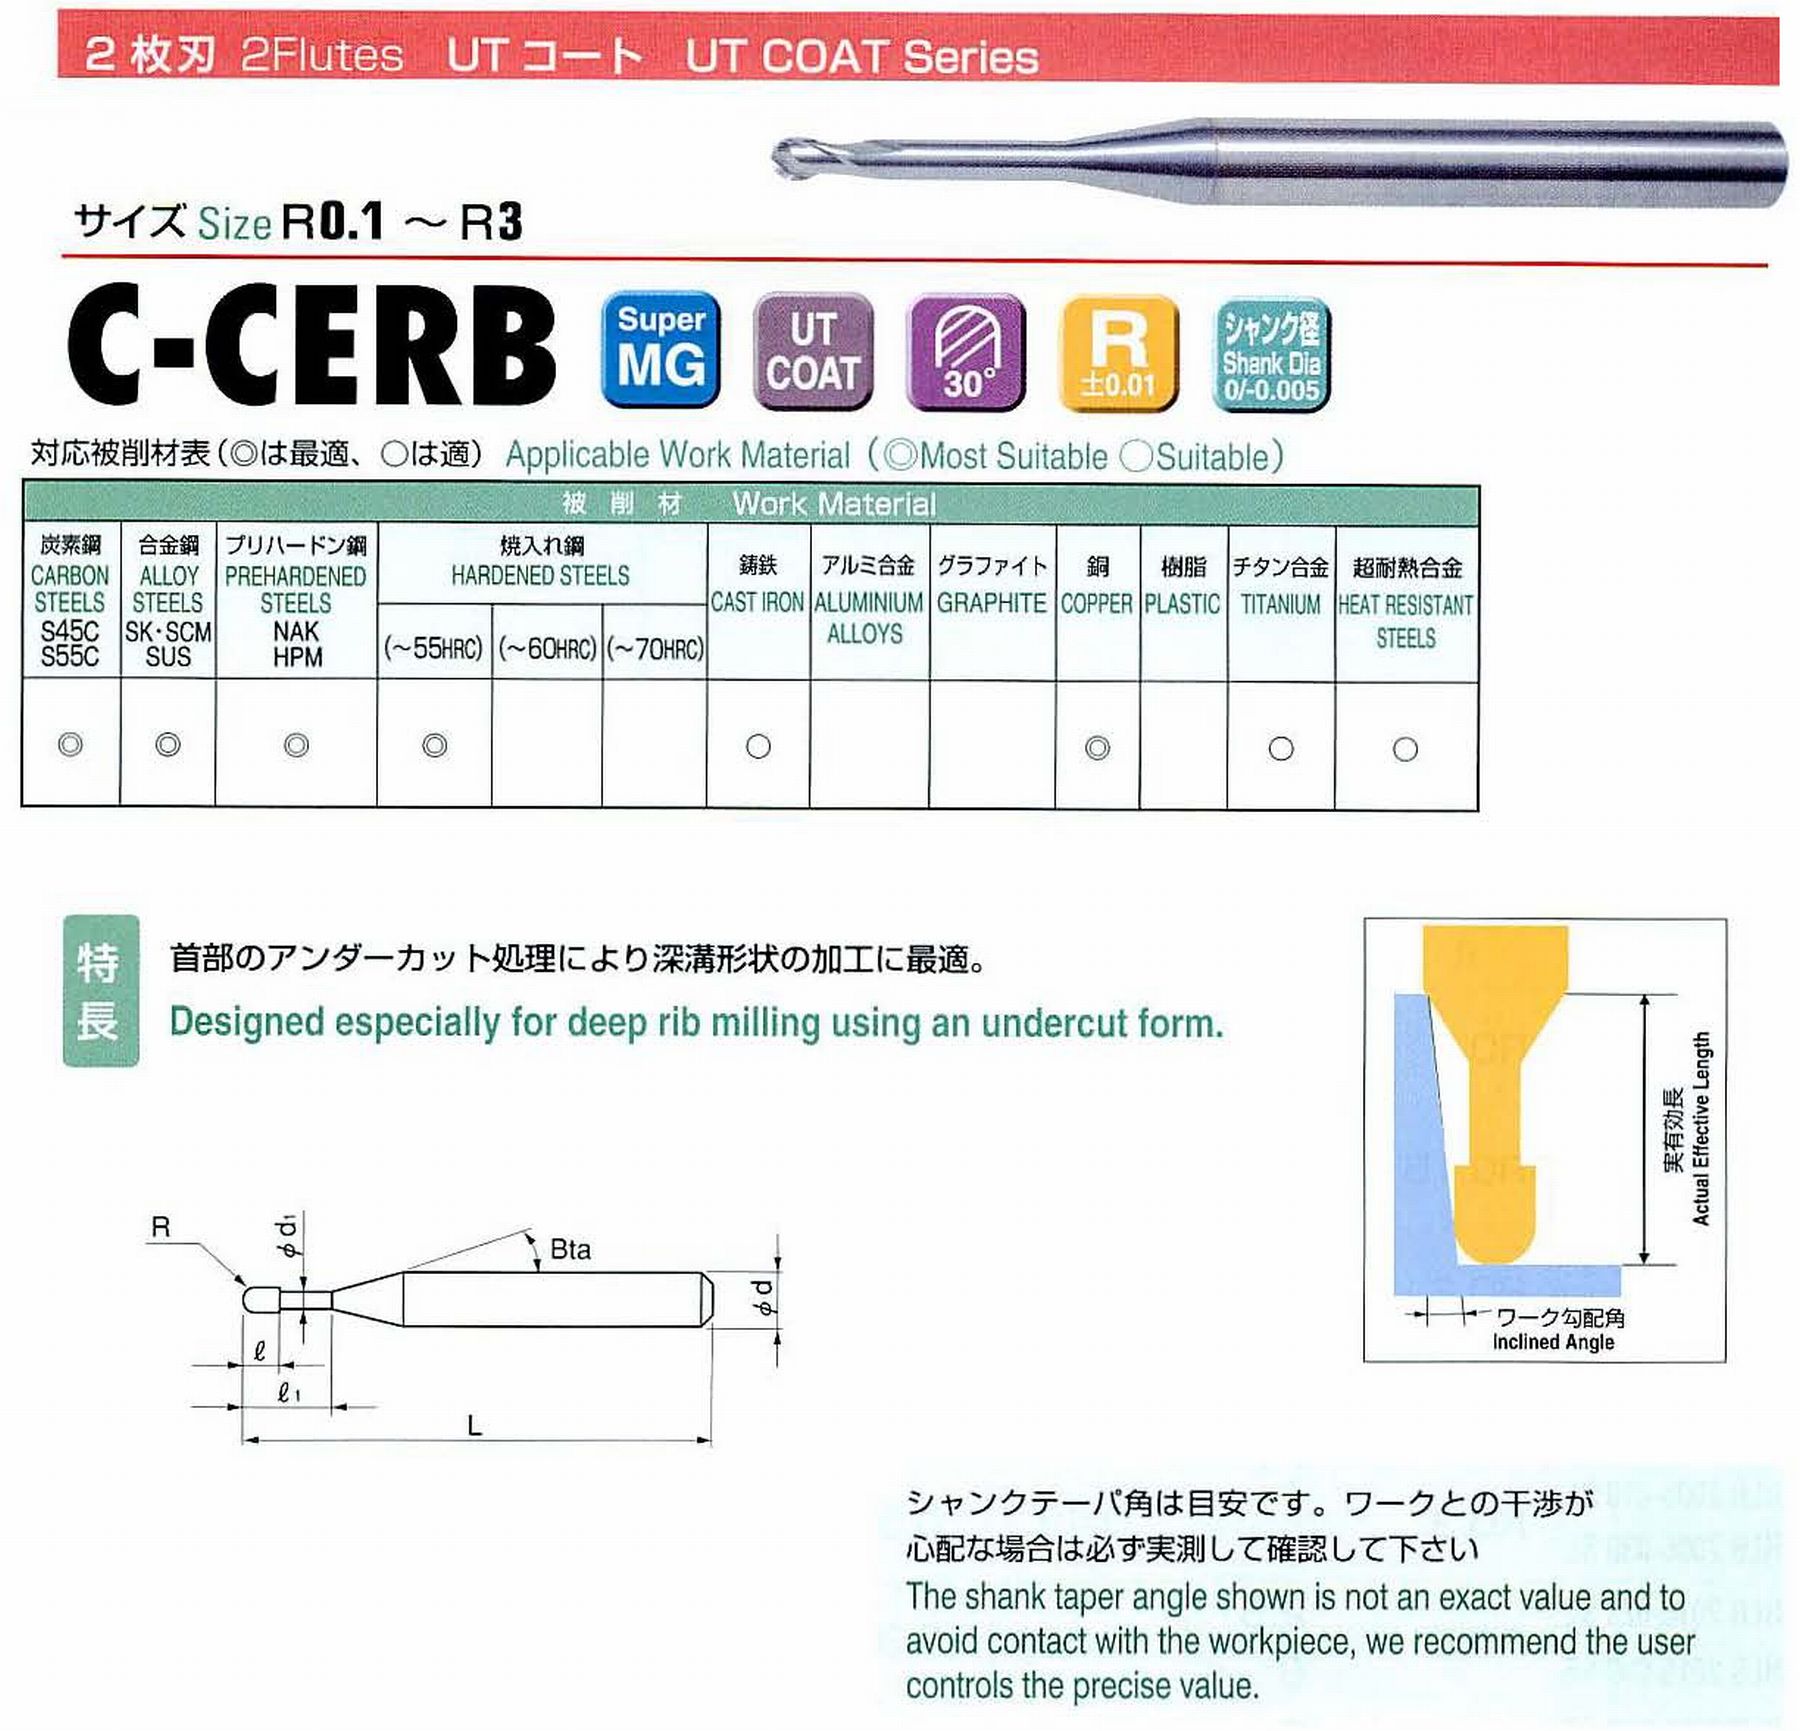 ユニオンツール 2枚刃 C-CERB2005-3.5 ボール半径R0.25 有効長3.5 刃長0.4 首径0.47 シャンクテーパ角16° 全長45 シャンク径4